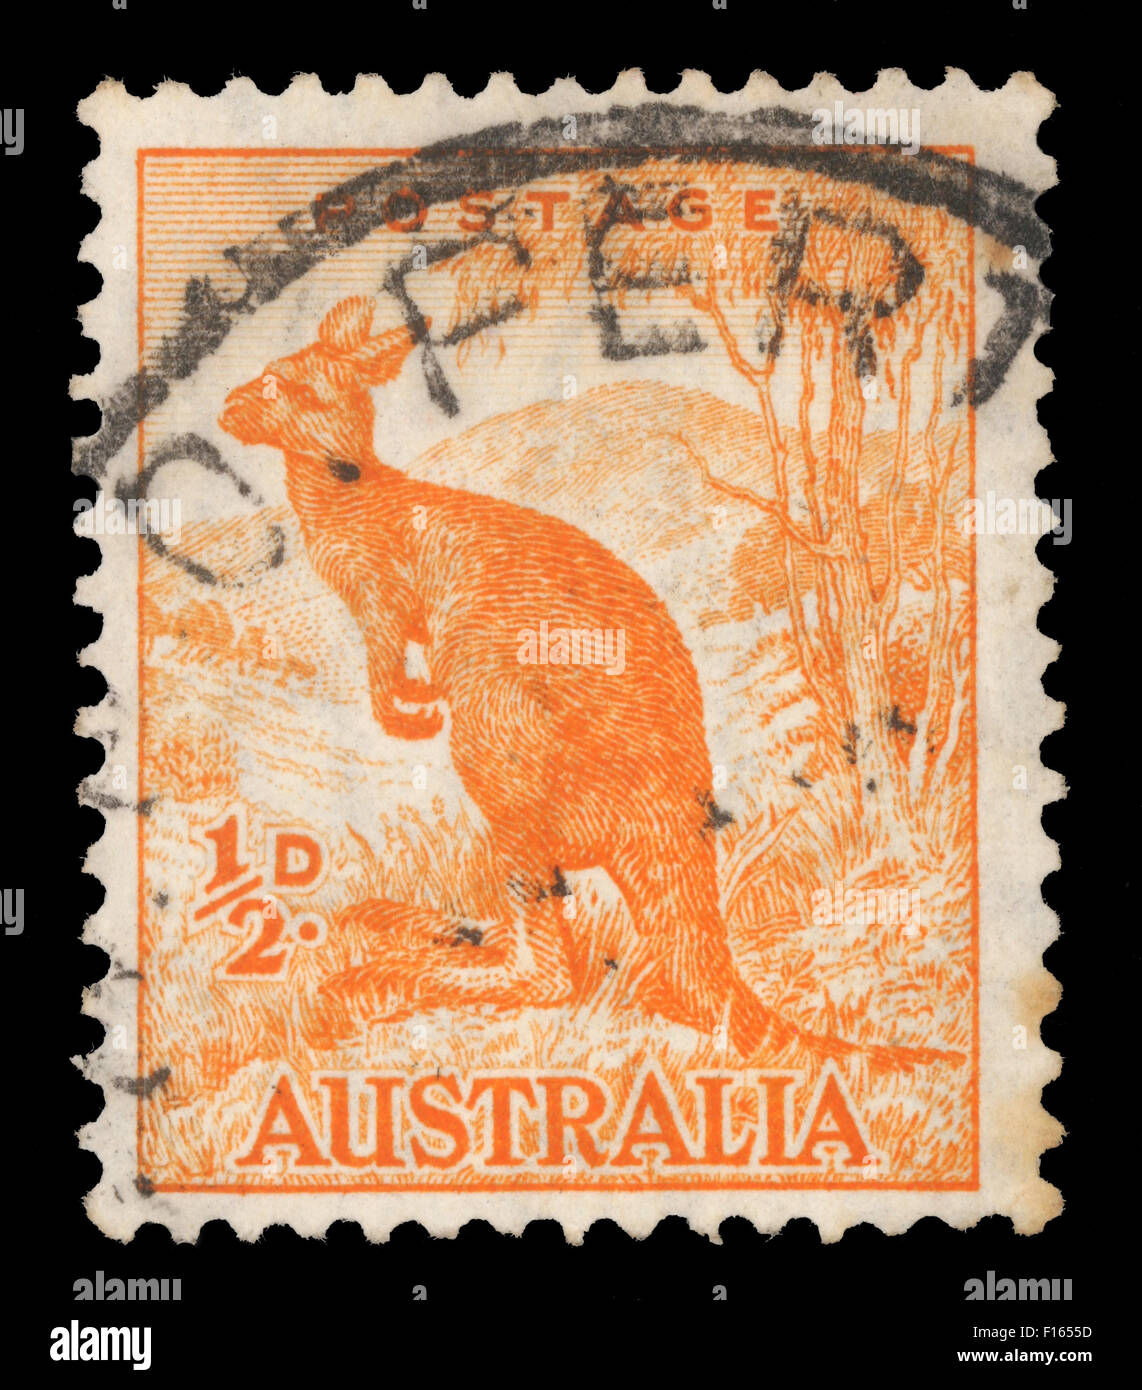 Timbres en Australie avec l'image d'un kangourou (1937) de la première impression. Banque D'Images